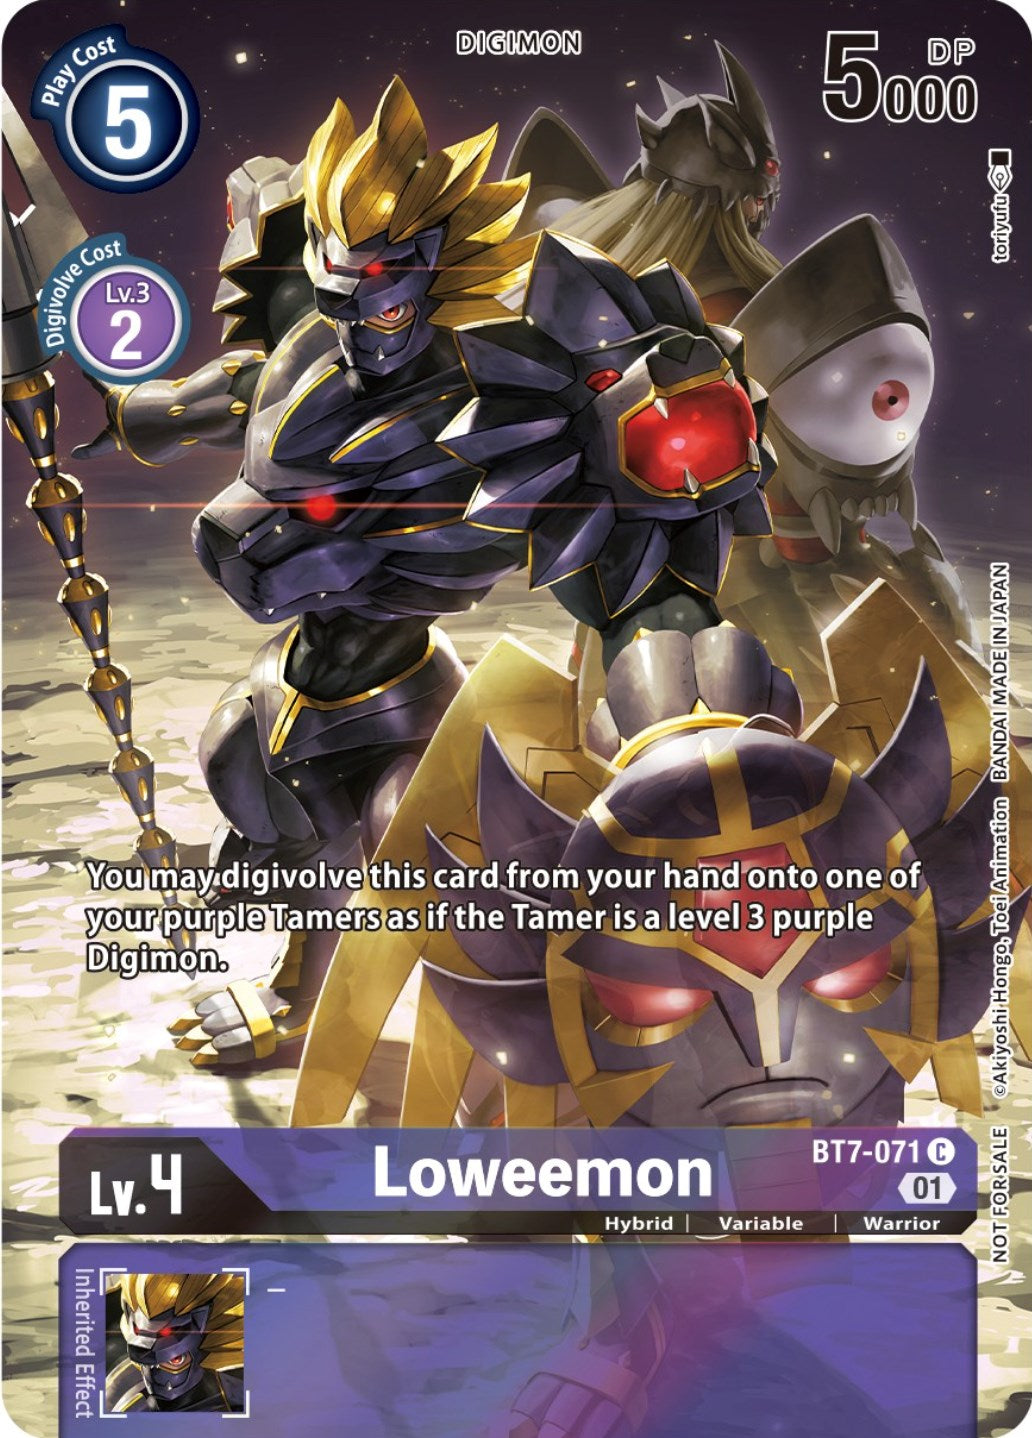 Loweemon [BT7-071] (2nd Anniversary Frontier Card) [Next Adventure Promos] | Devastation Store